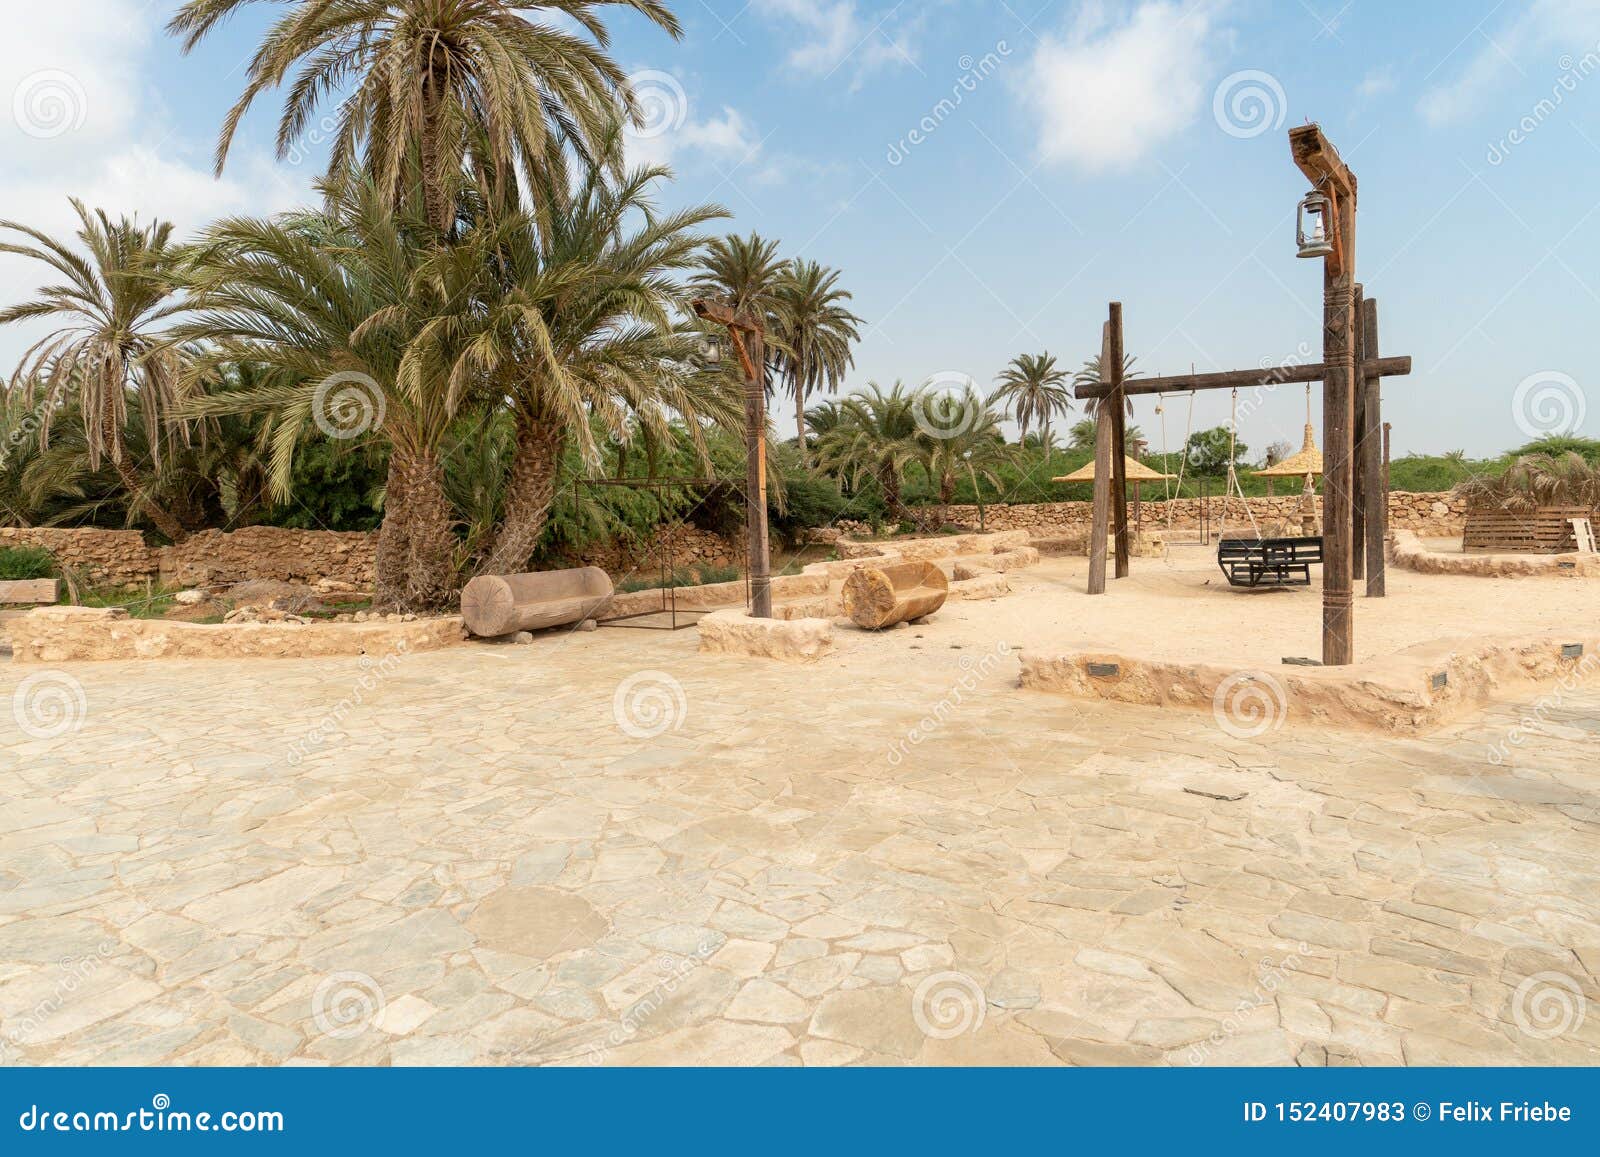 herritage village on farasan island in jizan province, saudi arabia